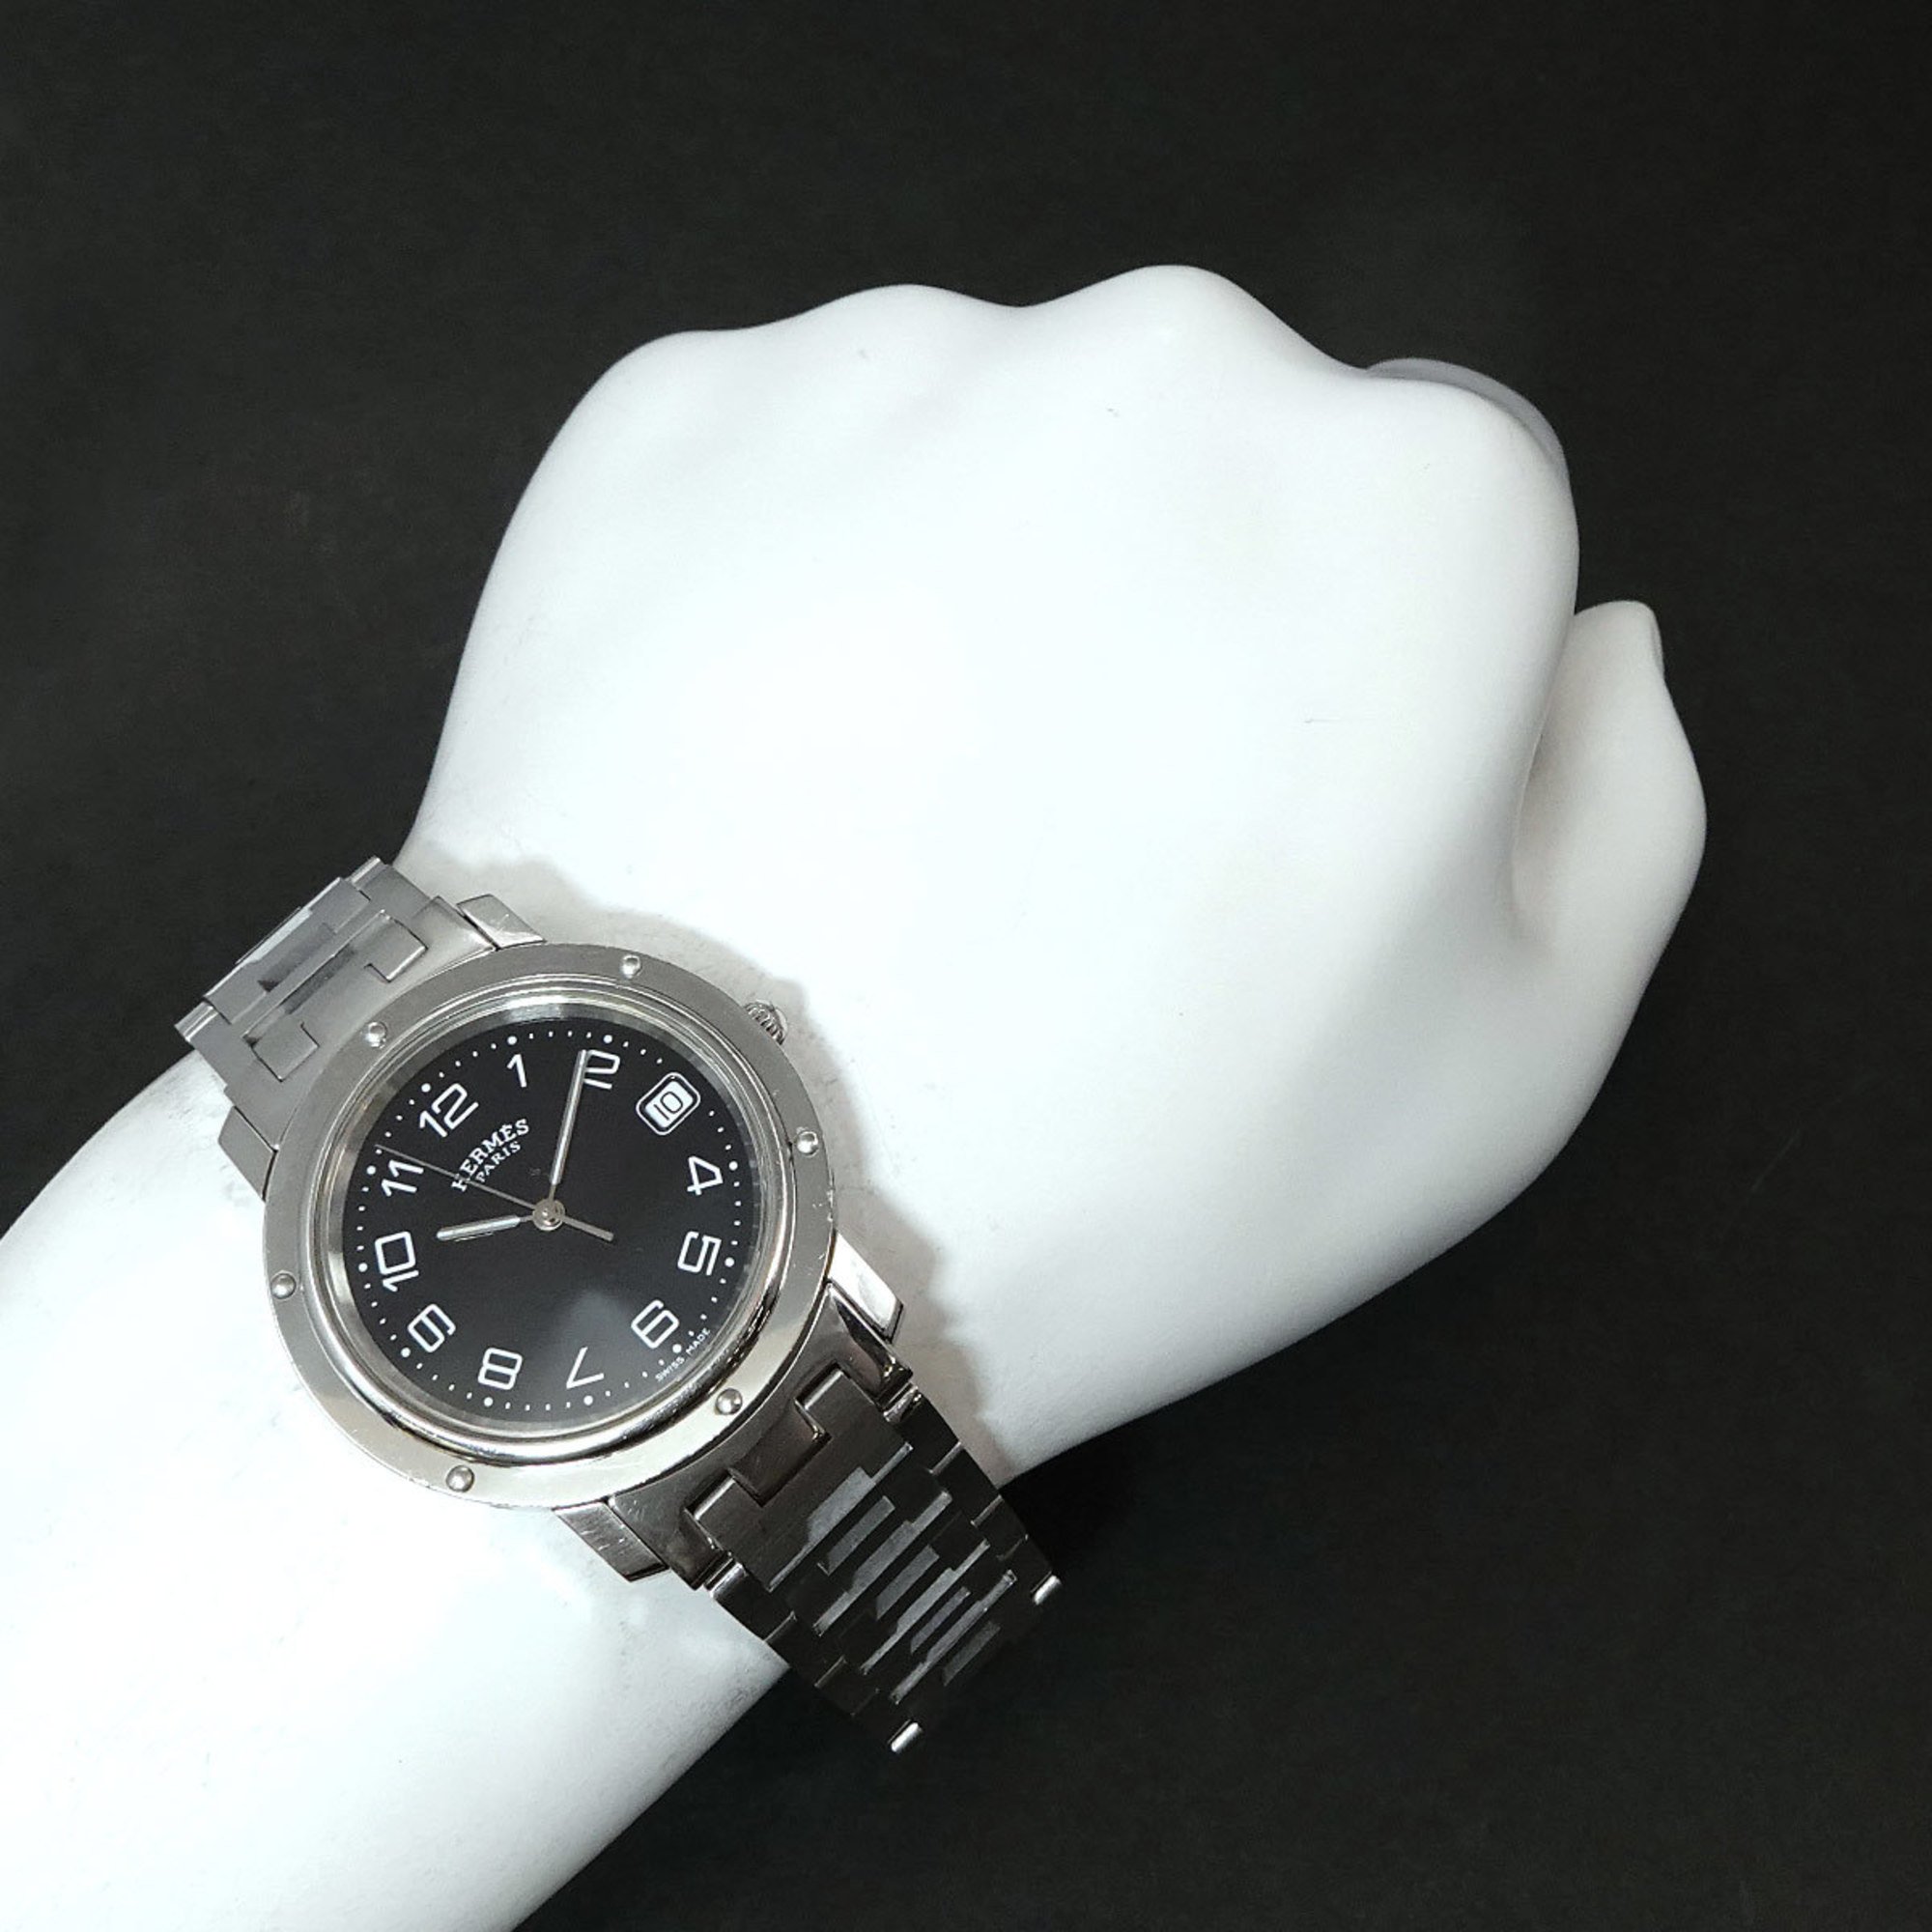 Hermes Clipper CL6 710 Men's Watch Date Black Dial Quartz